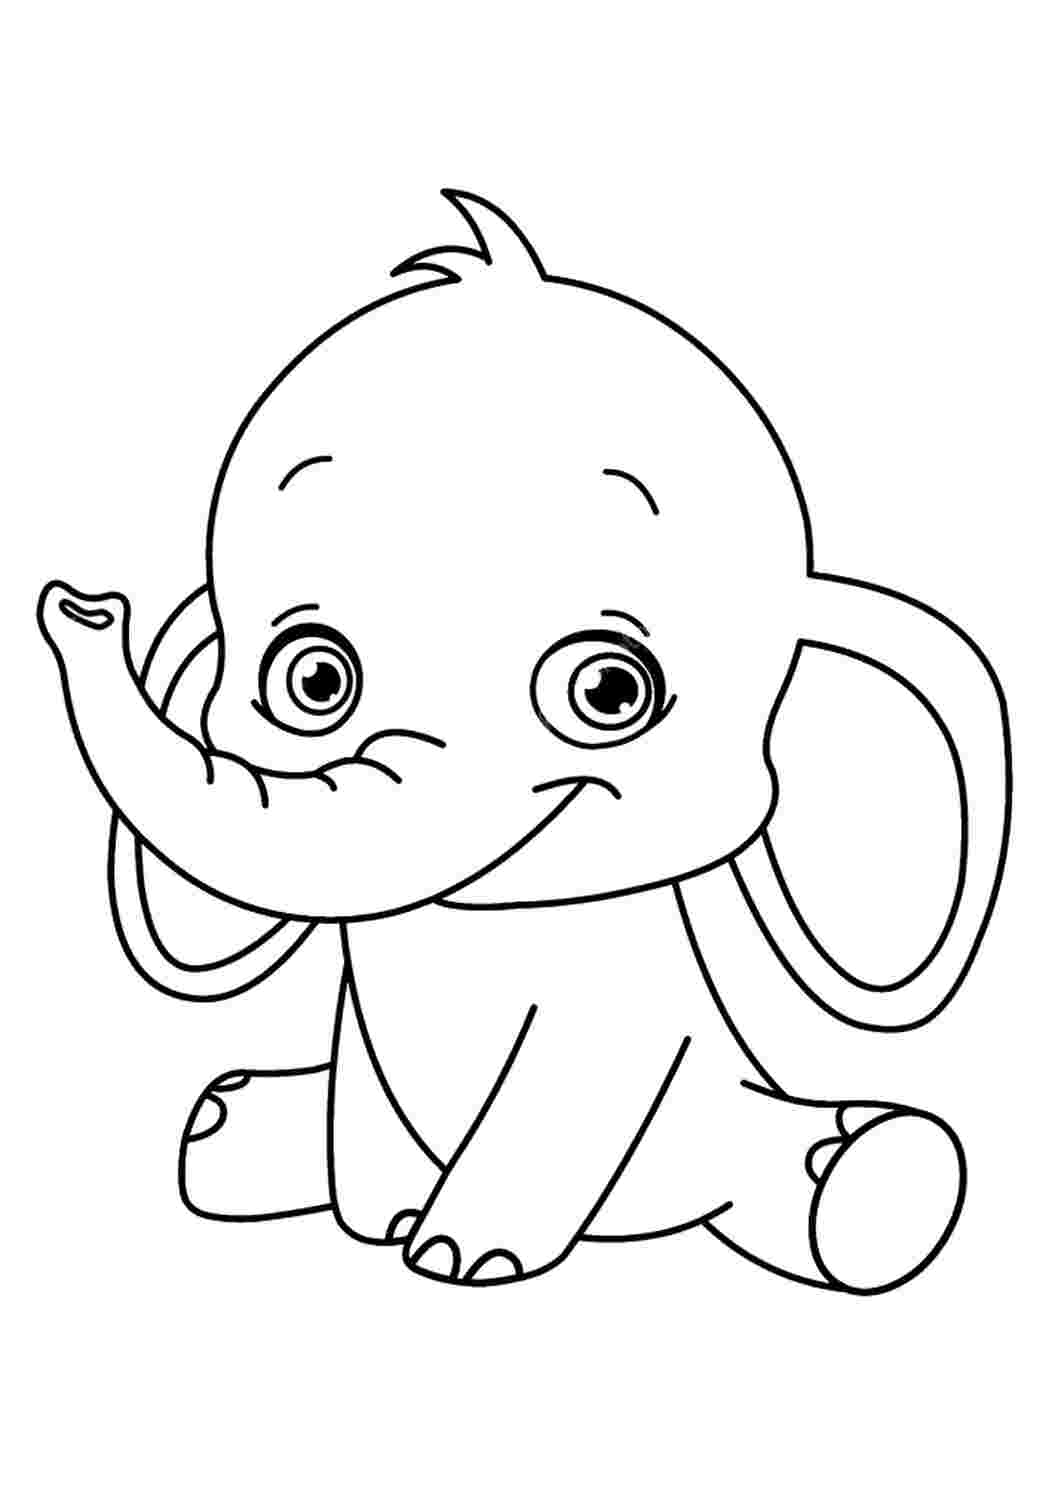 Индийский слон — раскраска для детей. Распечатать бесплатно.